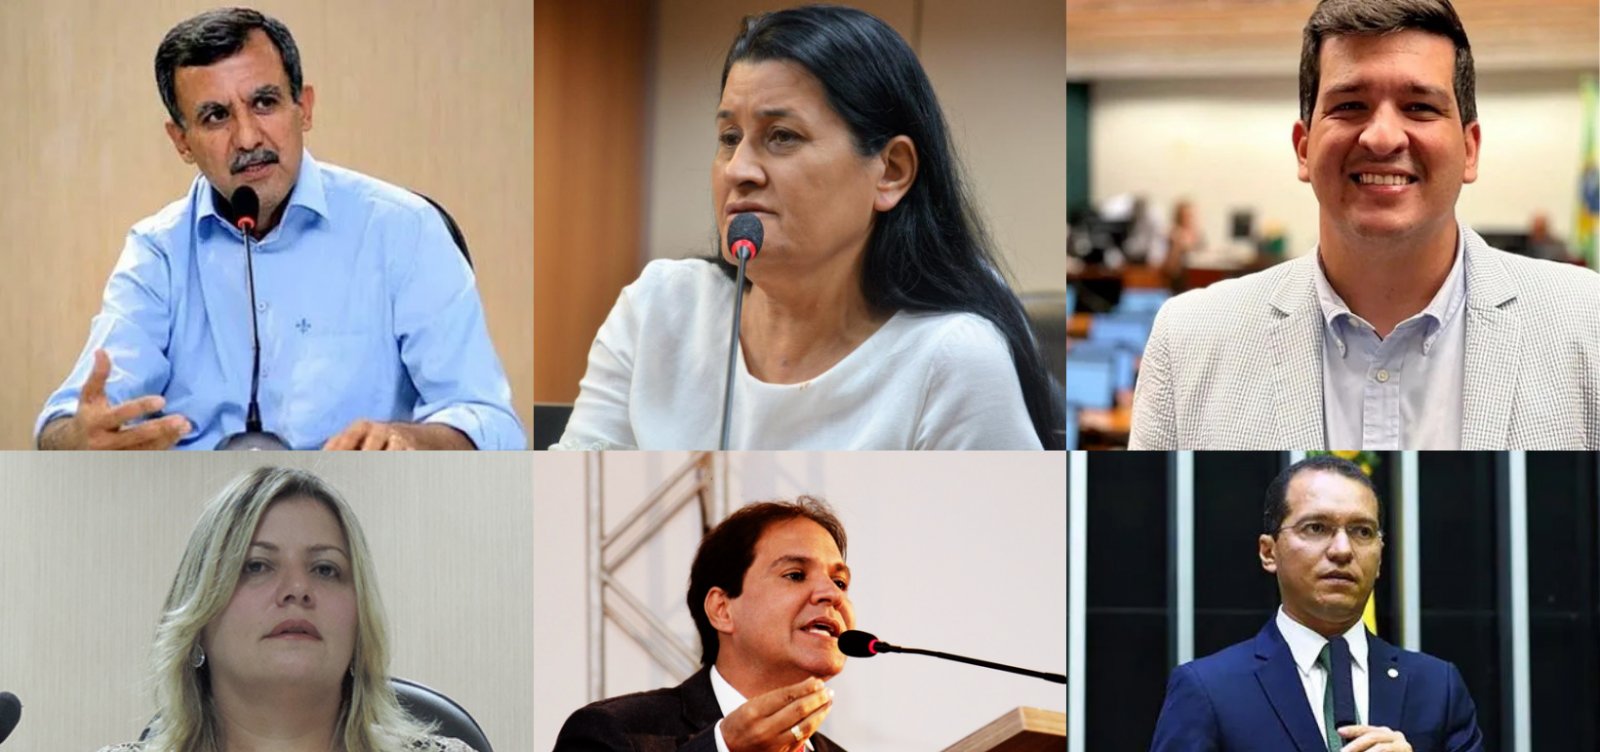 Zito Barbosa posterga escolha de sucessor enquanto oposição busca consenso em Barreiras para vencer eleições